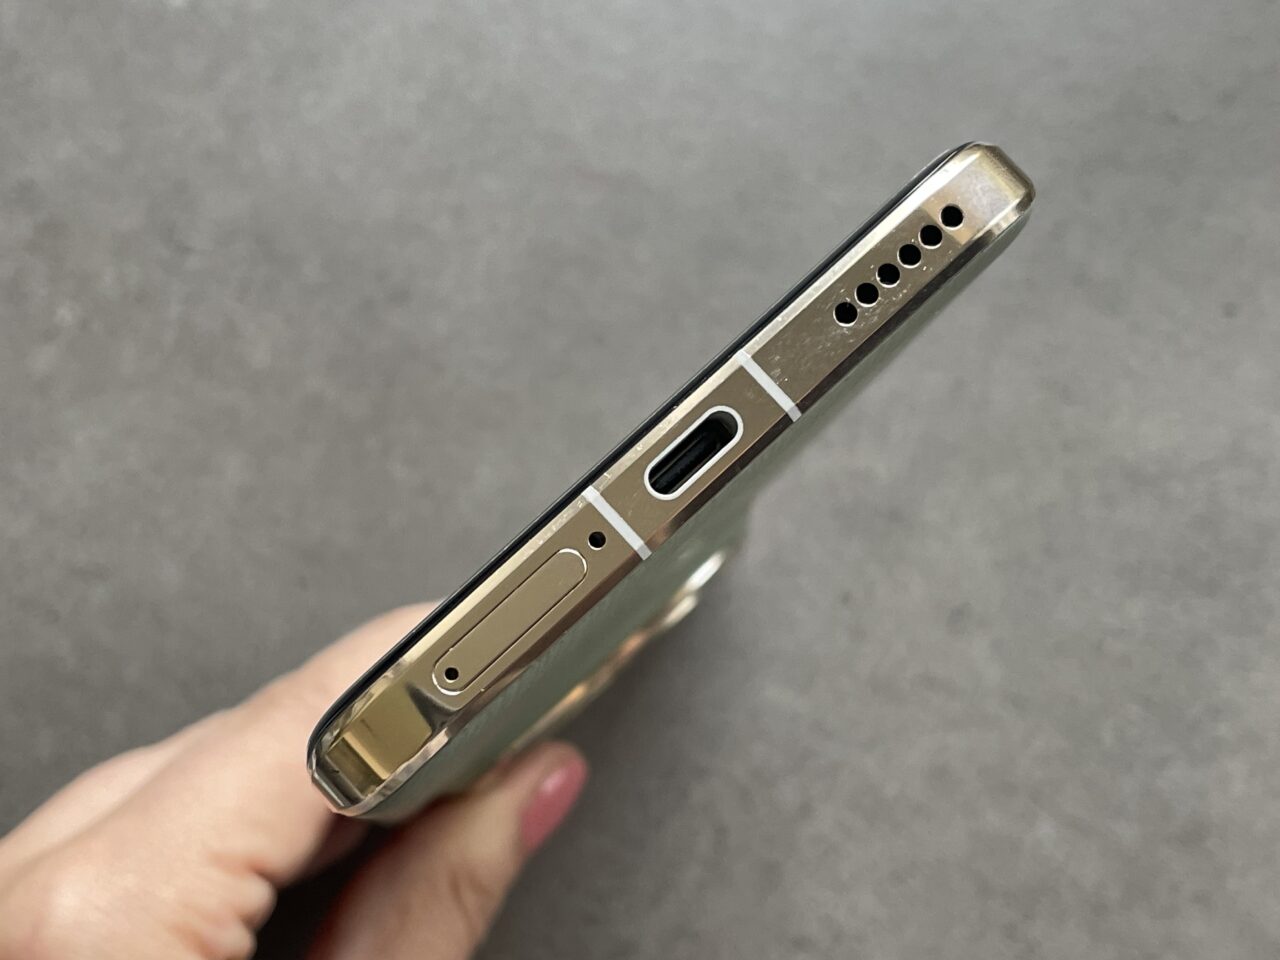 Złoty smartphone z widocznym gniazdem USB, głośnikiem i złączem słuchawkowym na szarym tle.